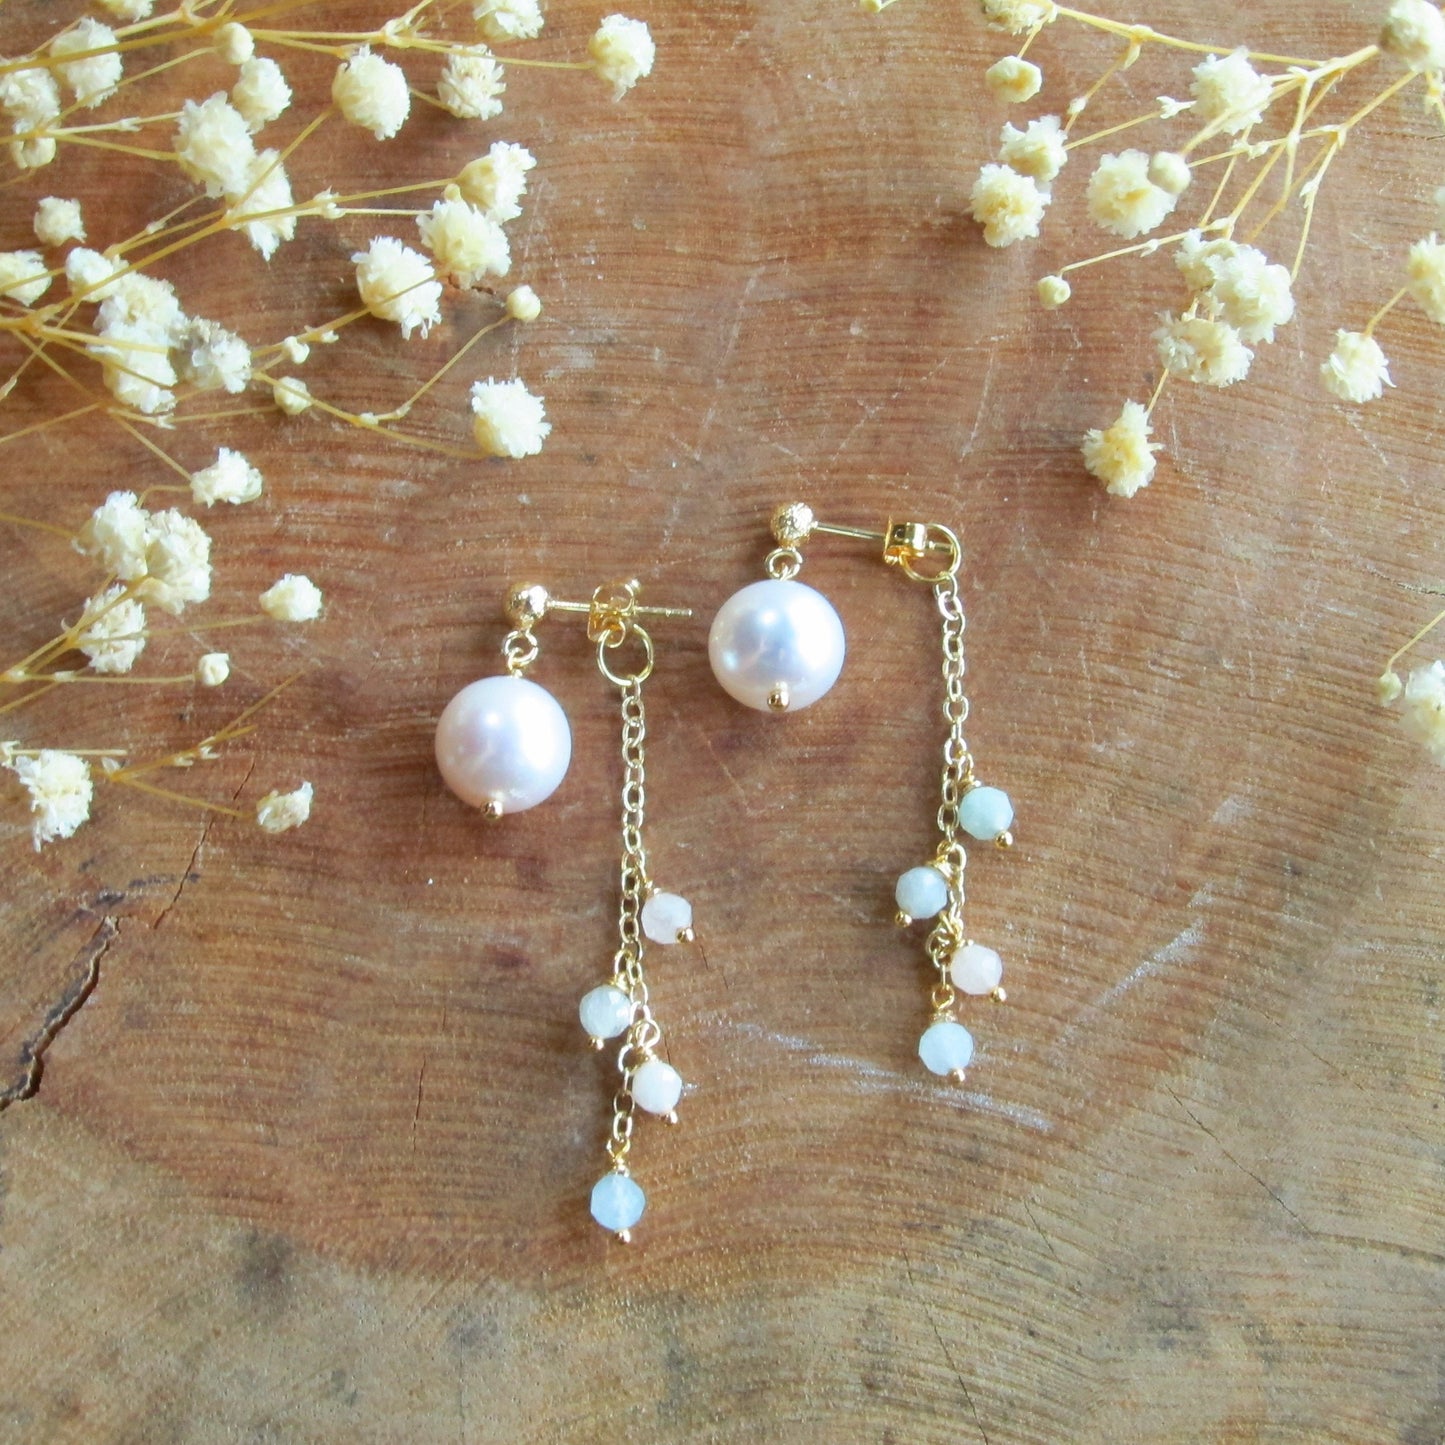 Gemstone with Fresh Water Pearl Dange Earrings- Morganite